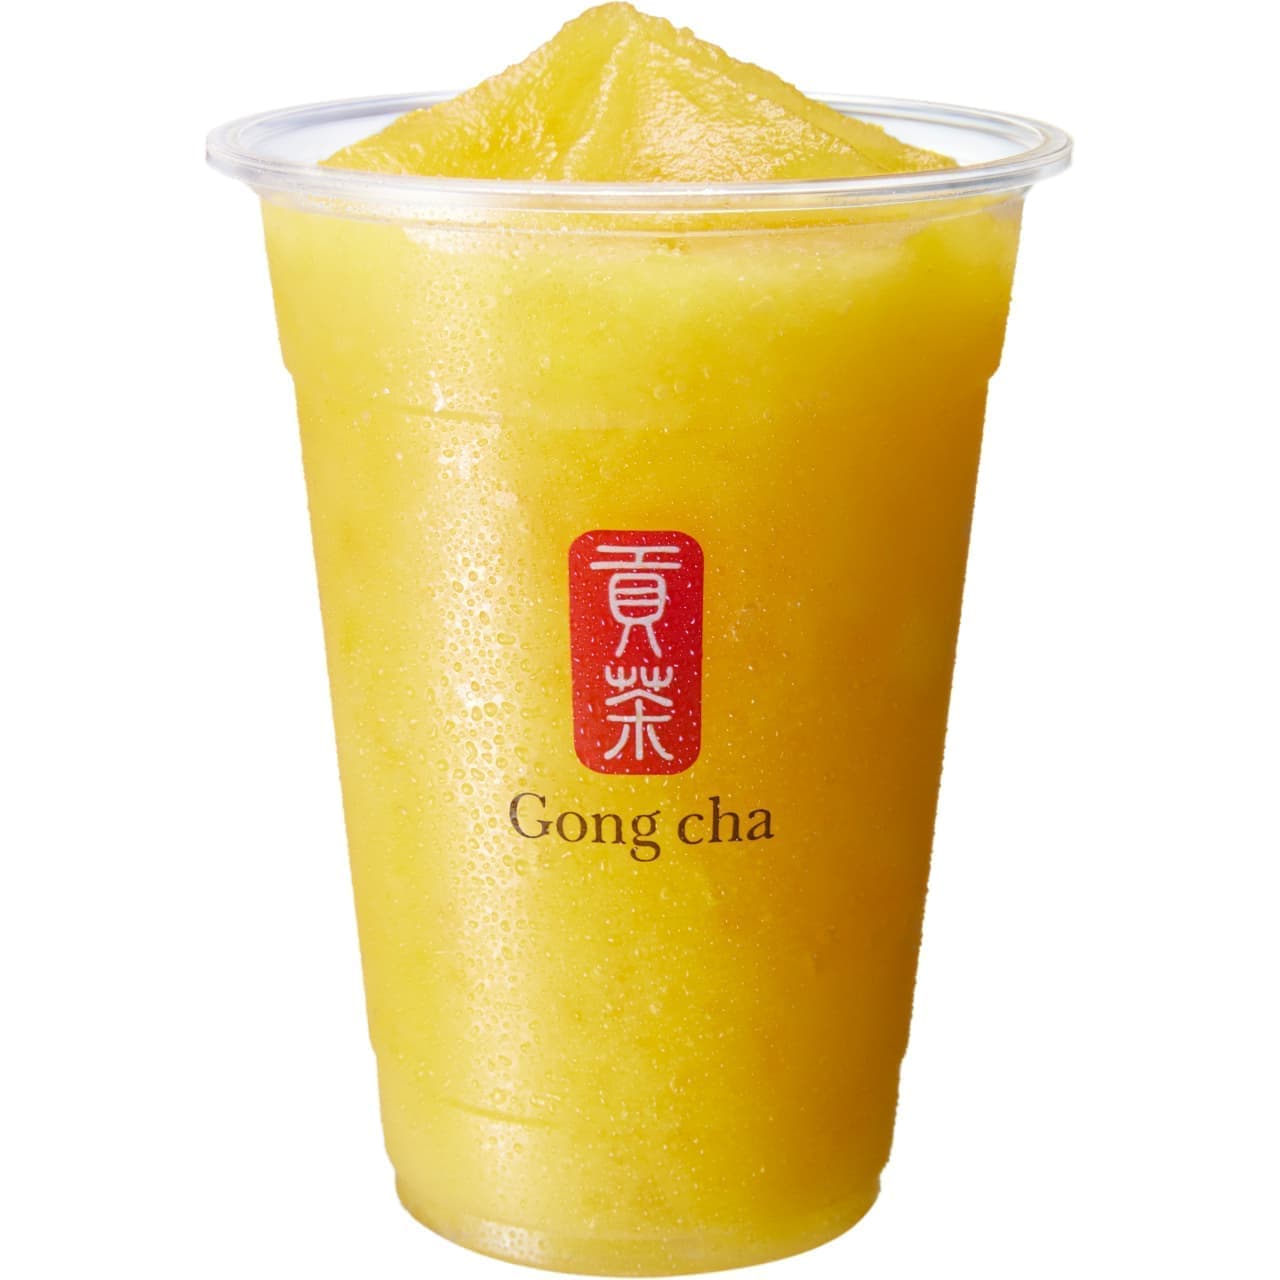 Gong Cha "Mango Alishan Frozen Tea